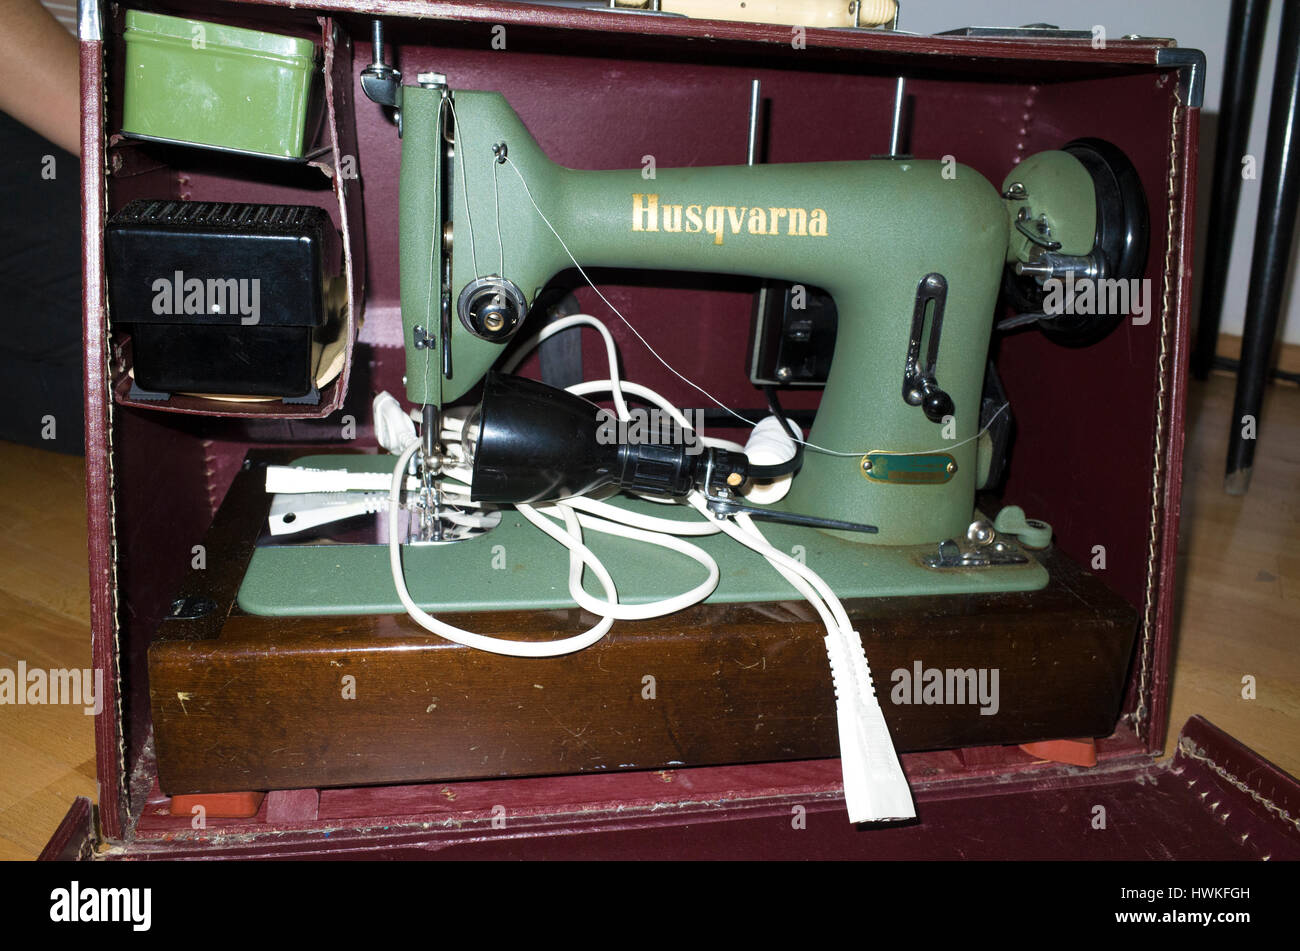 Vieux, mais la machine à coudre Husqvarna de travail à la maison. Zawady Europe centrale Pologne Banque D'Images